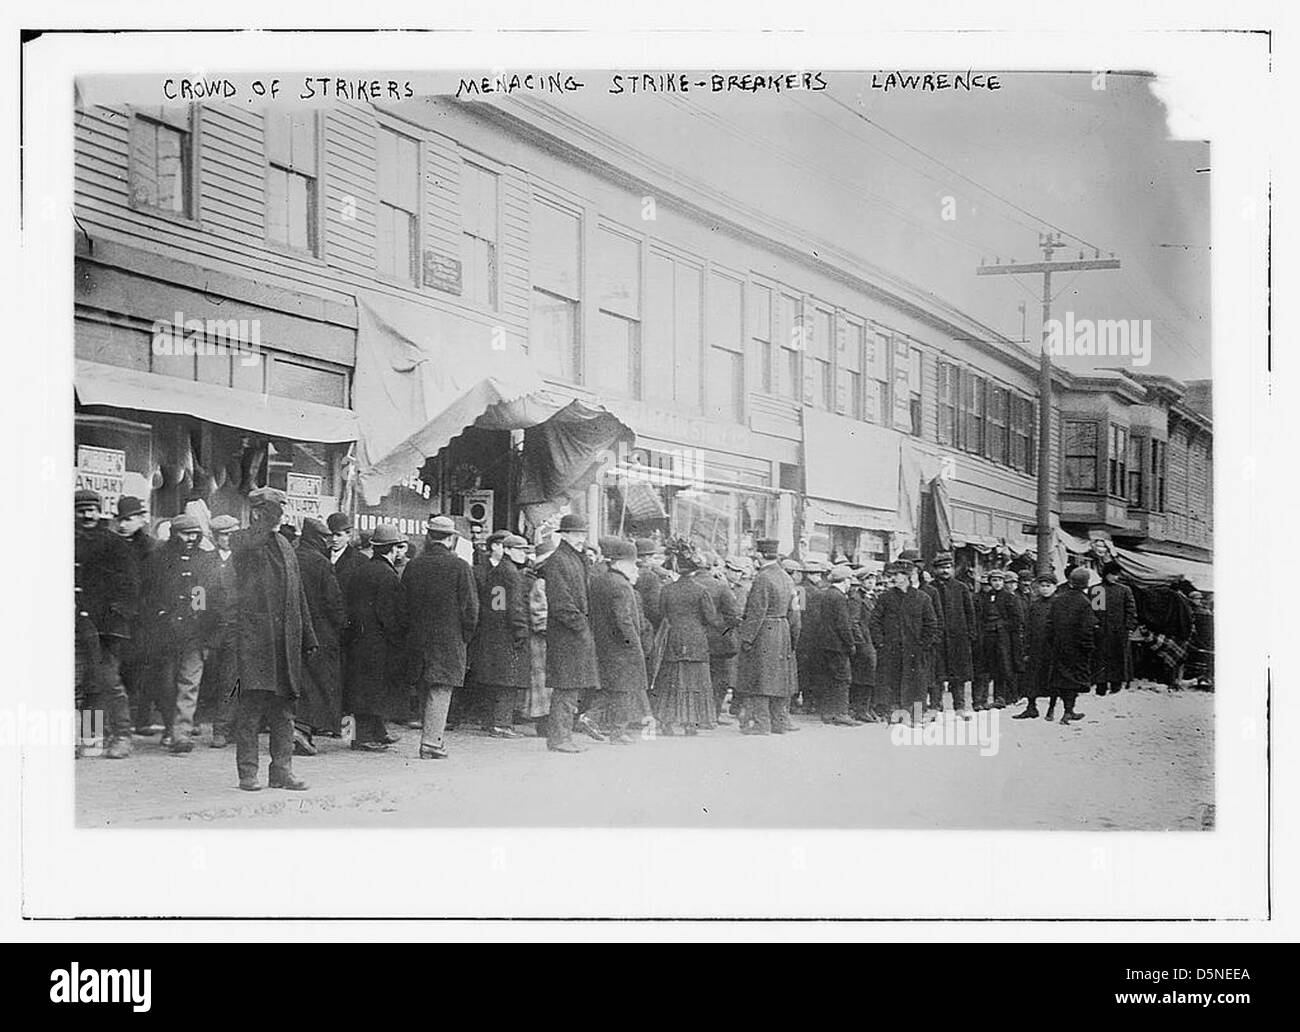 Crowd of strikers menacing strike-breakers, Lawrence (LOC) Stock Photo